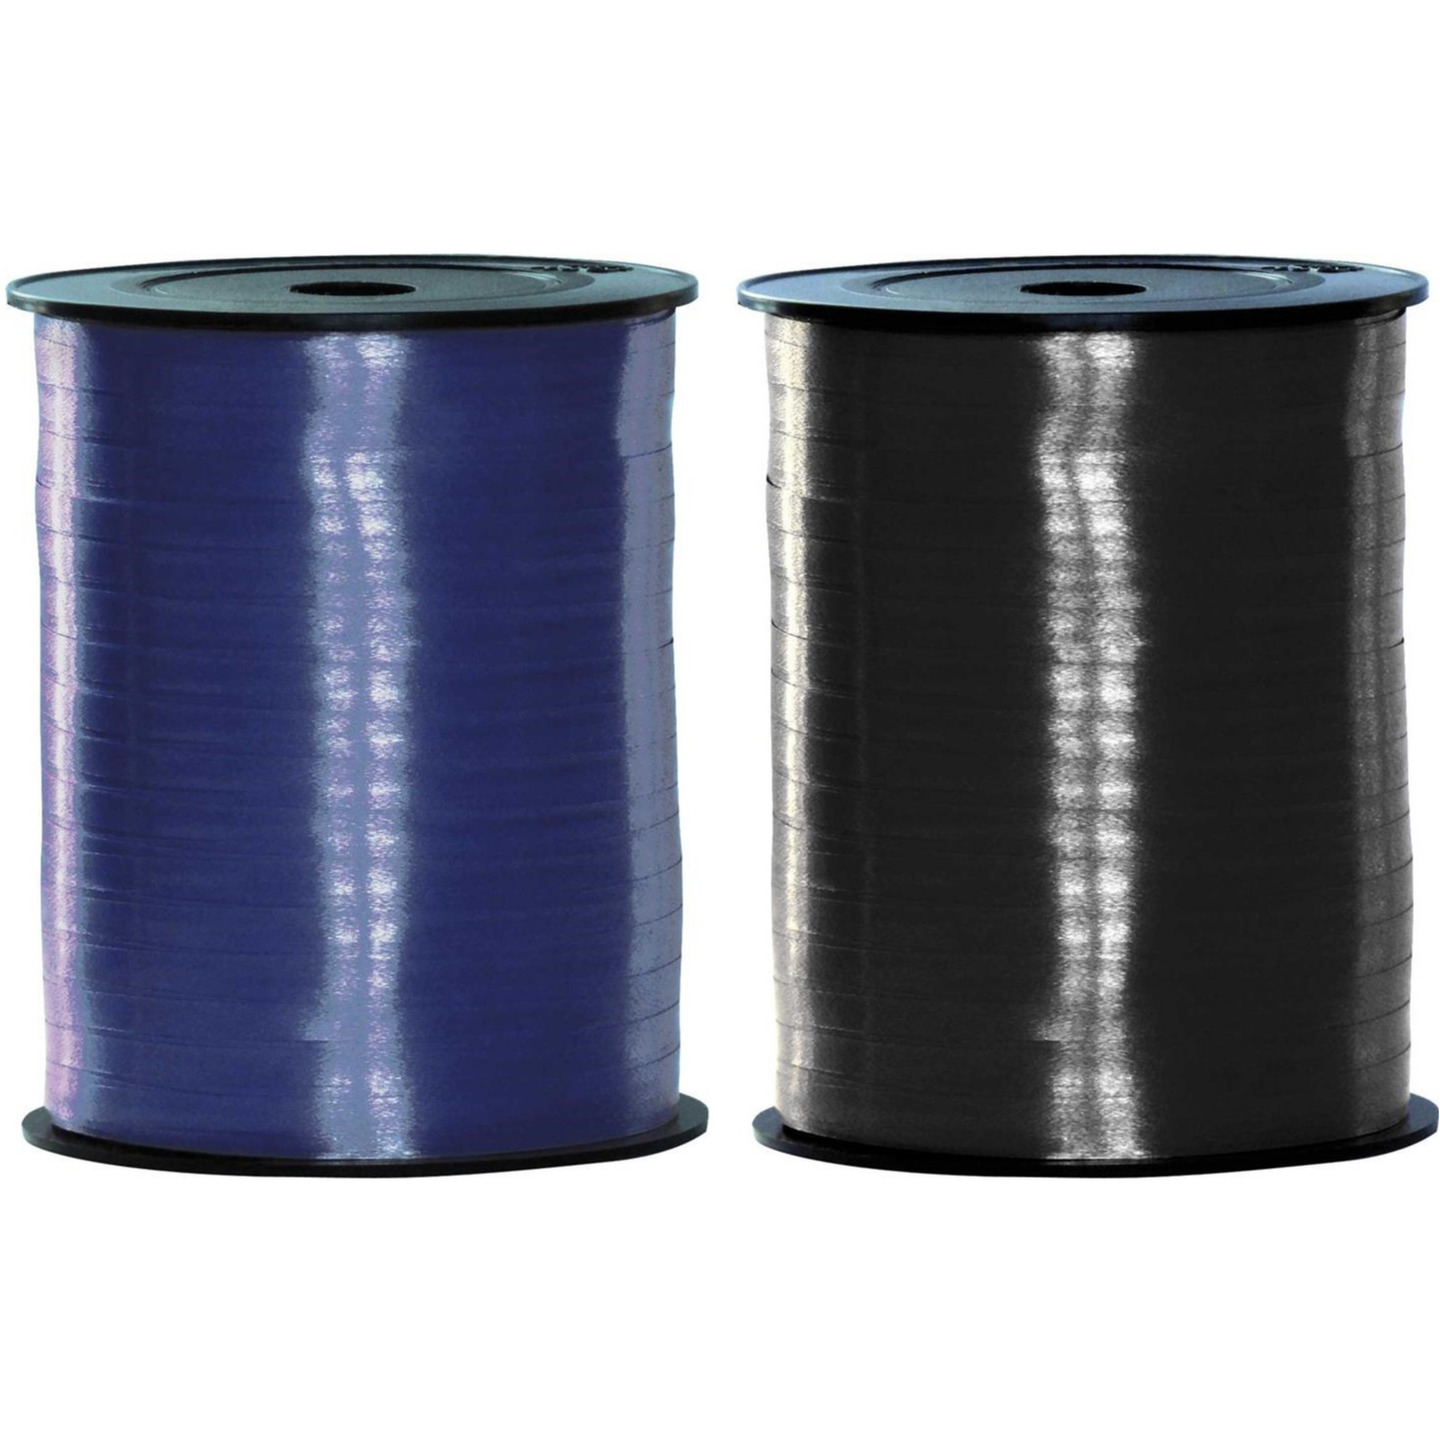 Pakket van 2 rollen lint zwart en blauw 500 meter x 5 milimeter breed